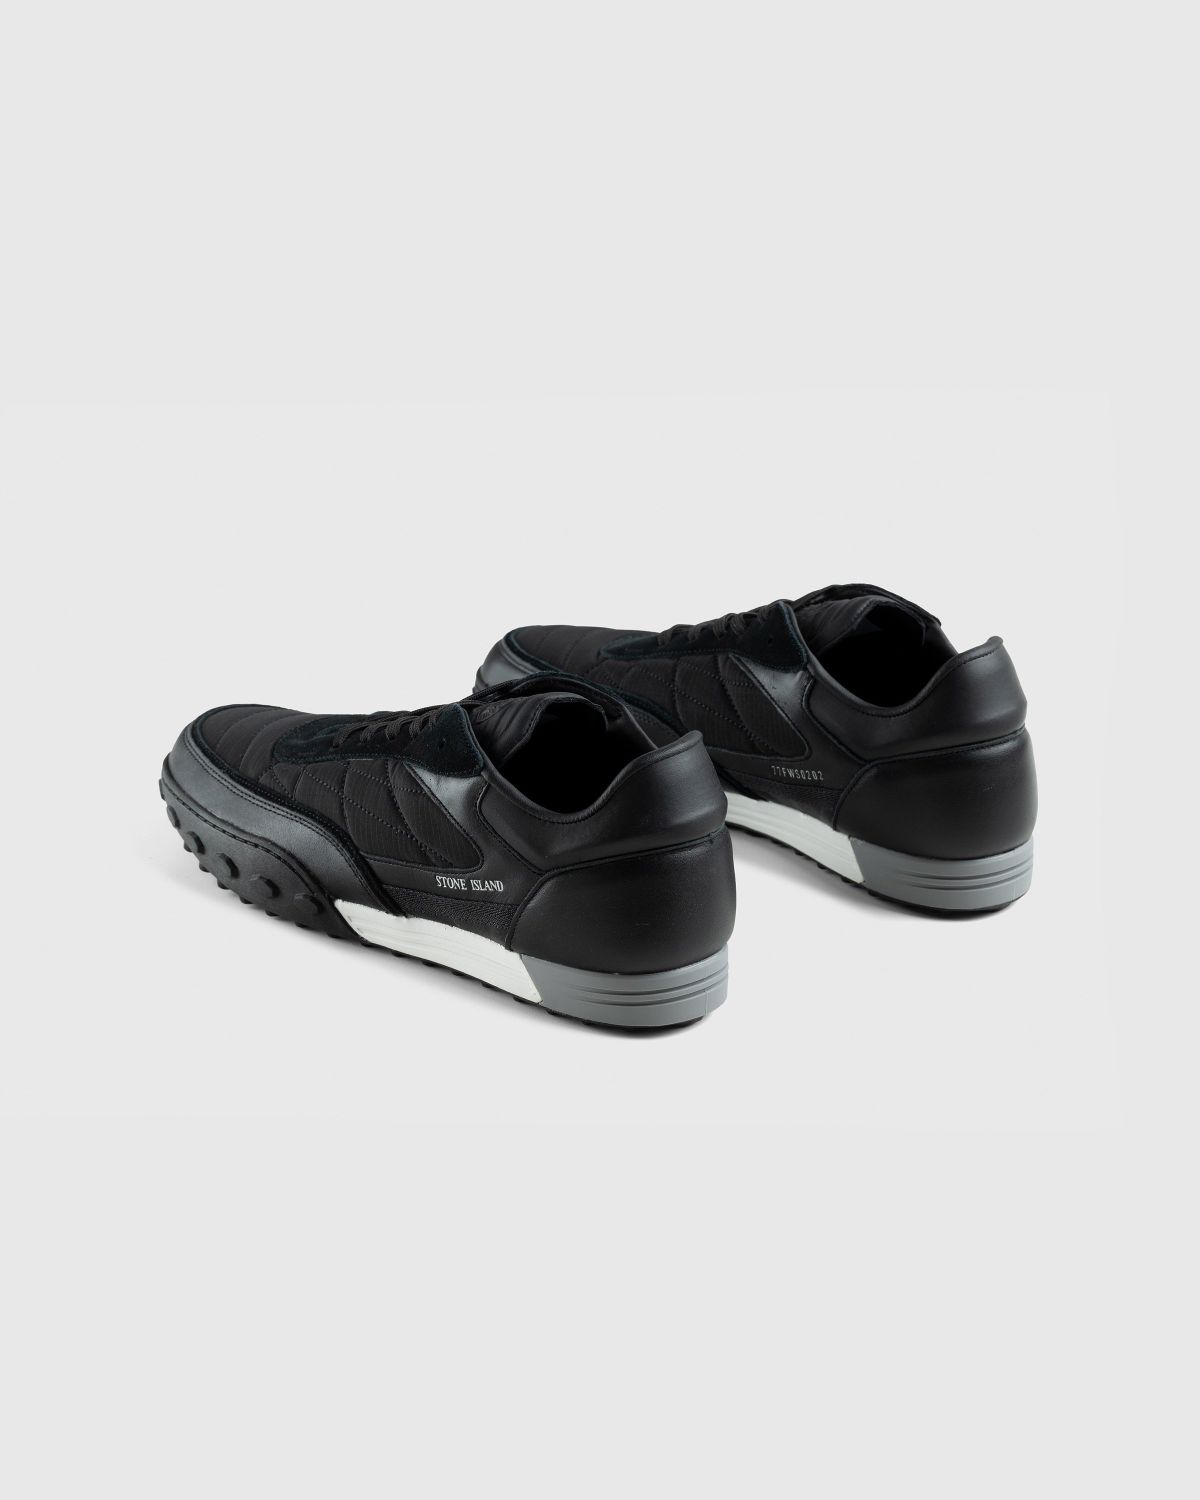 Stone Island – Football Sneaker Black - Sneakers - Black - Image 4